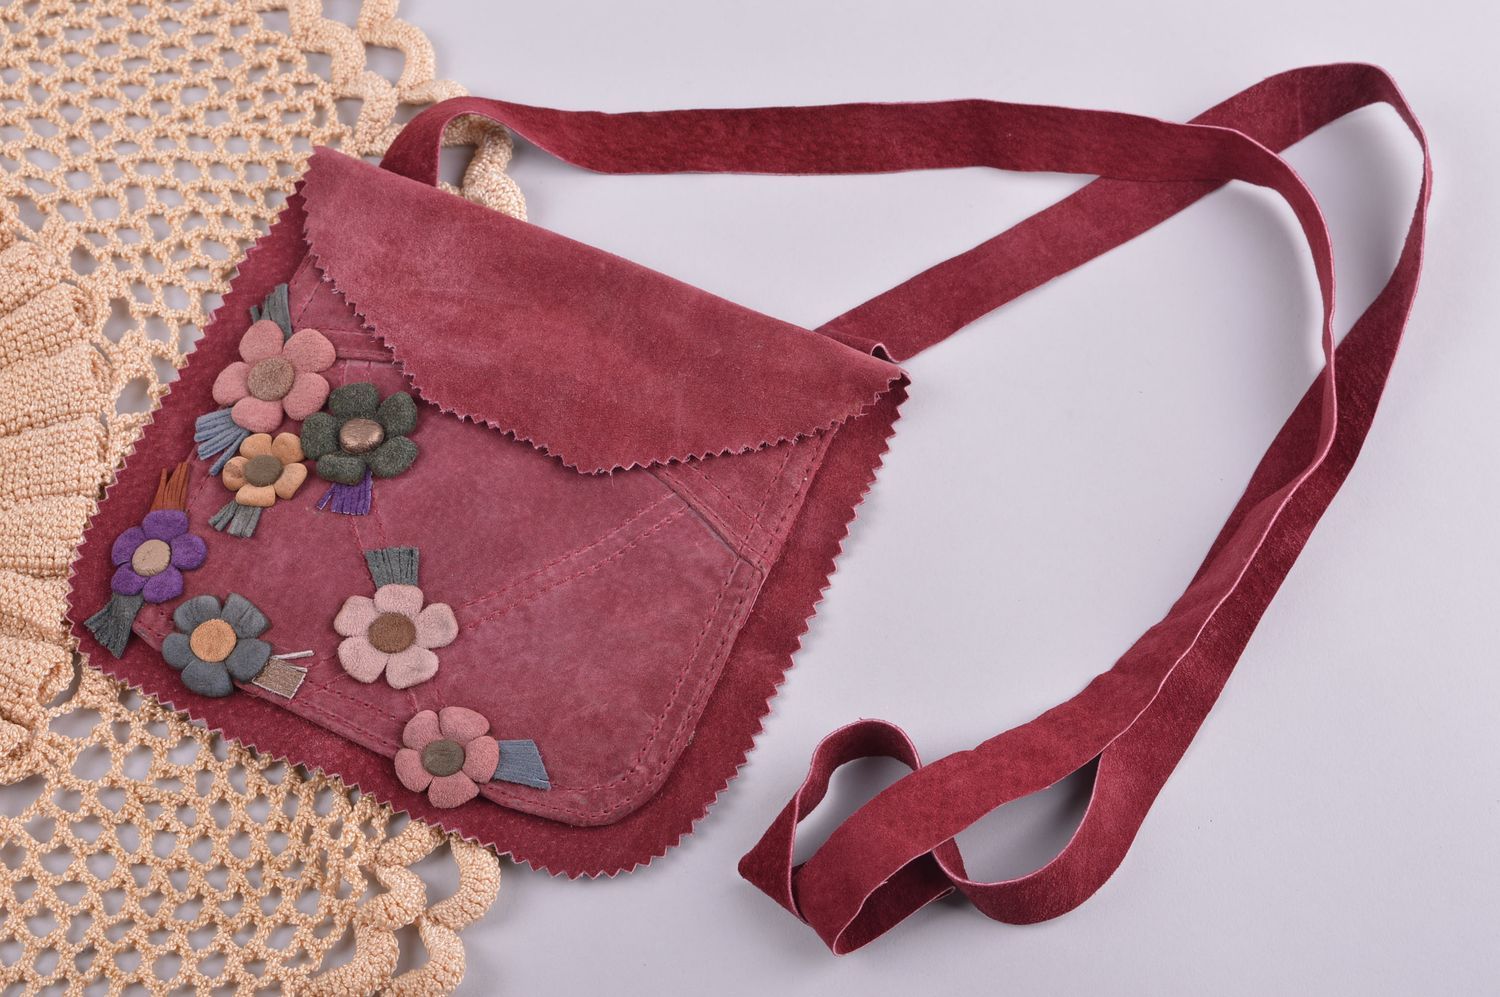 Сумка ручной работы сумка через плечо красивая кожаная сумка бордовая с цветами фото 1